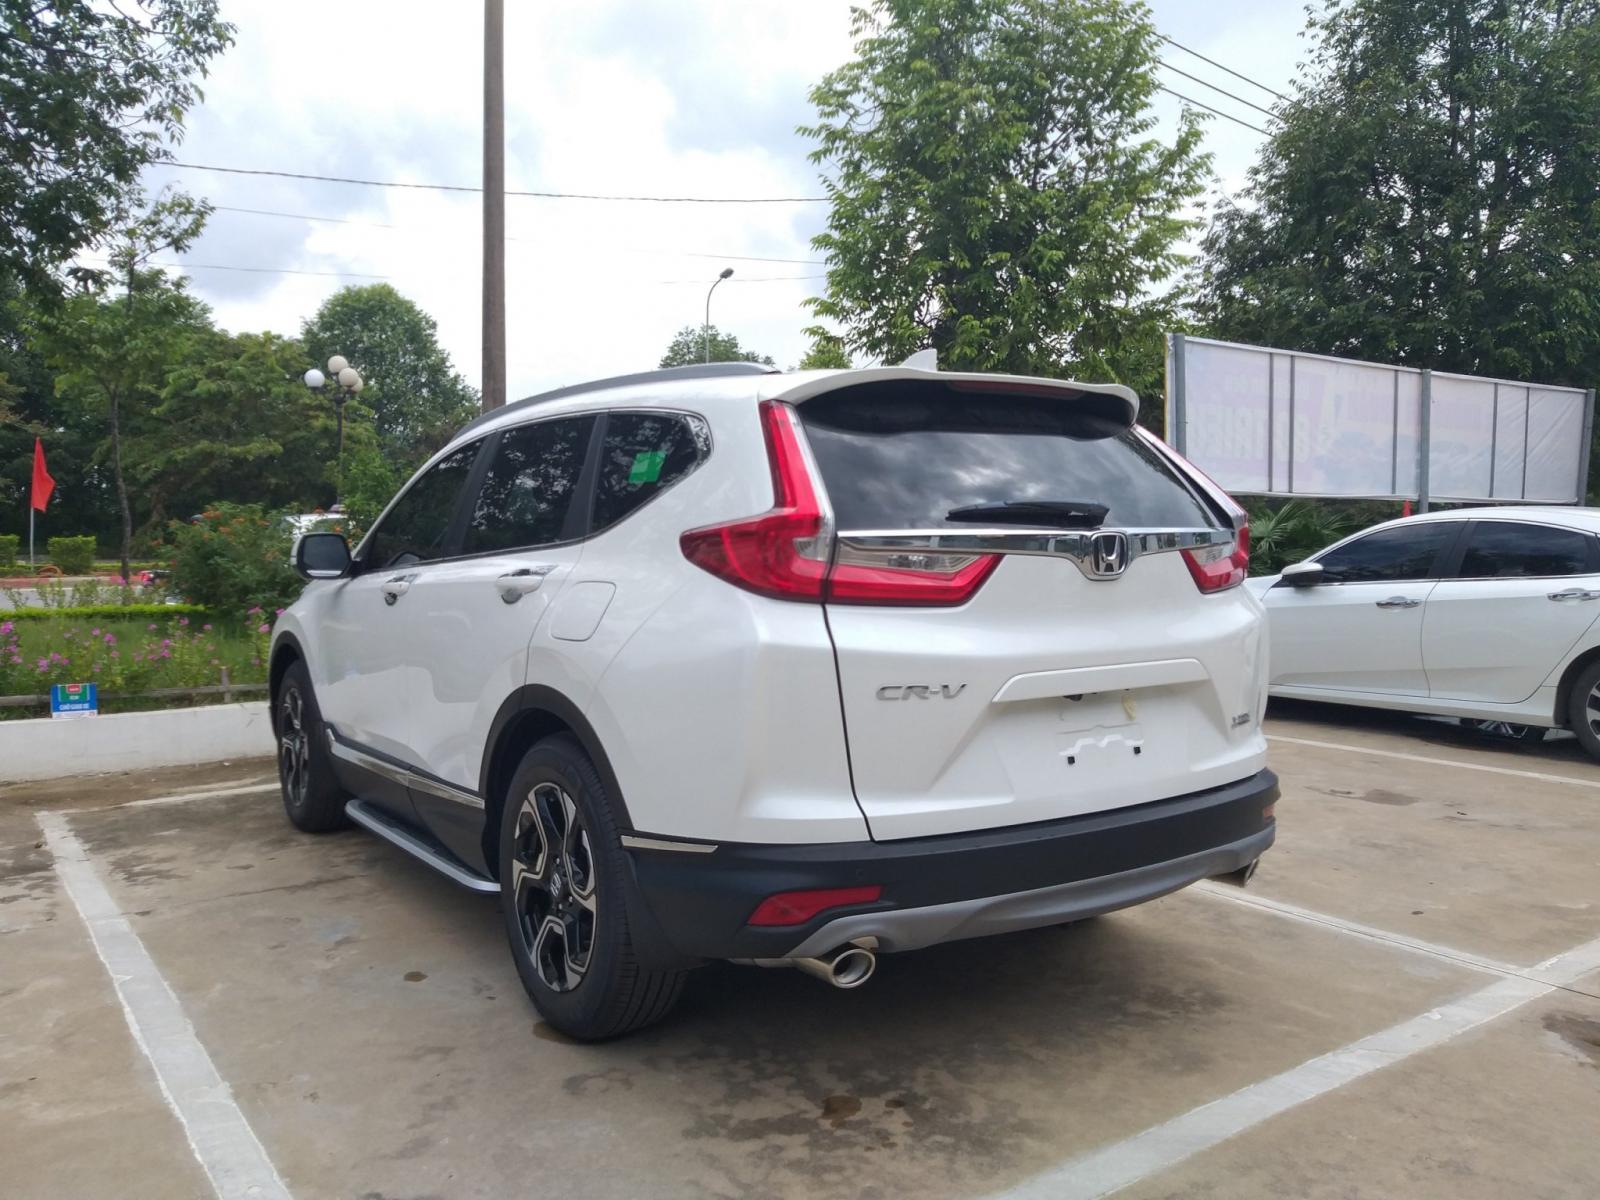 Giao ngay Honda CR-V 1.5 l, màu trắng, đời 2019, giảm giá sốc khi mua xe tại Honda Ôtô Thanh Hóa, LH: 0962028368.-4